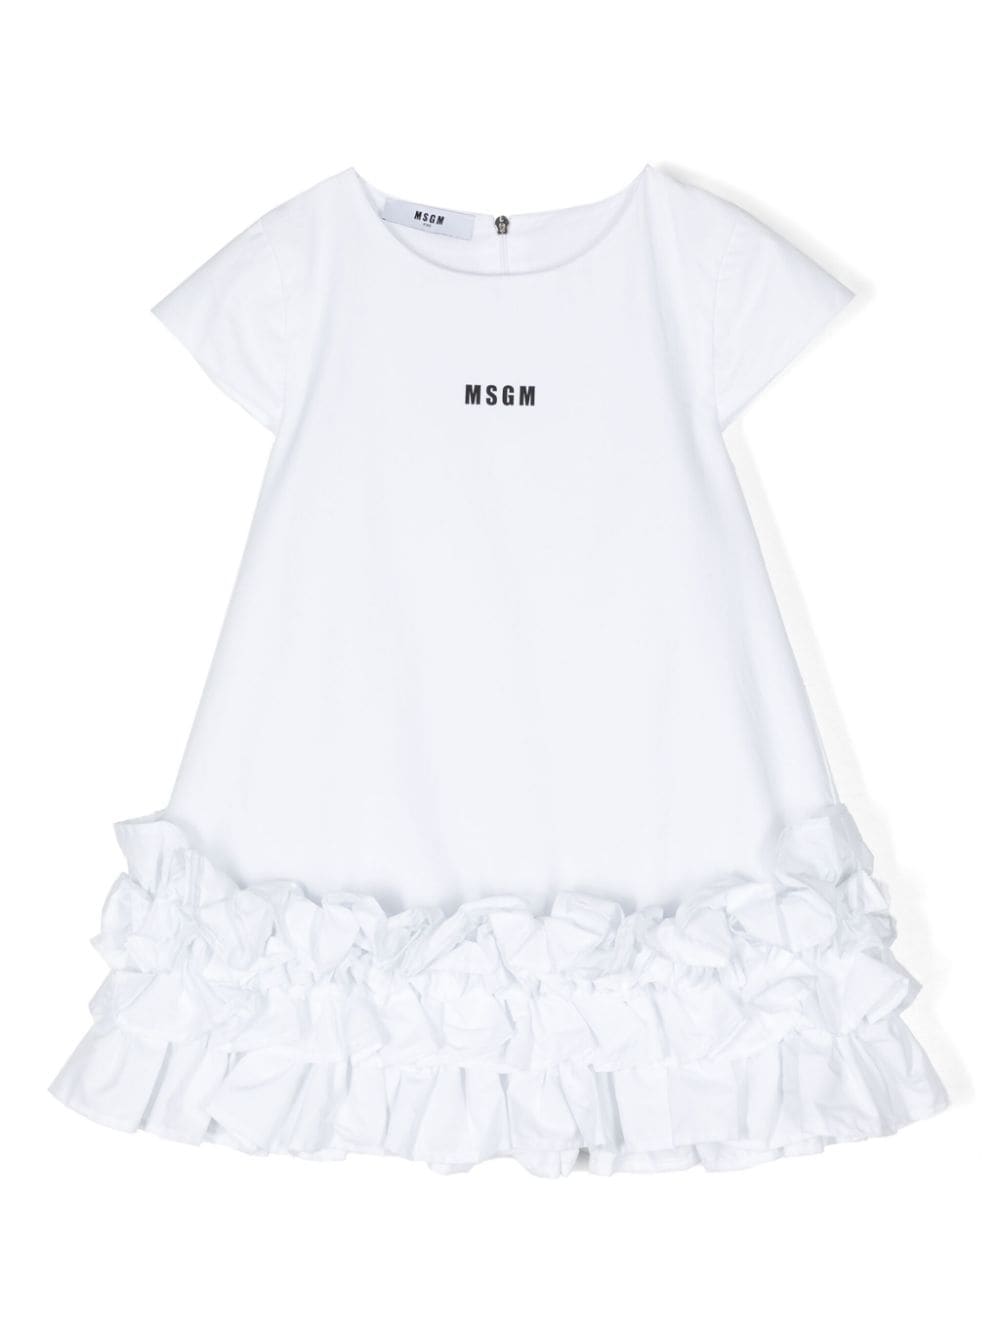 MSGM Kids logo-print T-shirt dress - White von MSGM Kids